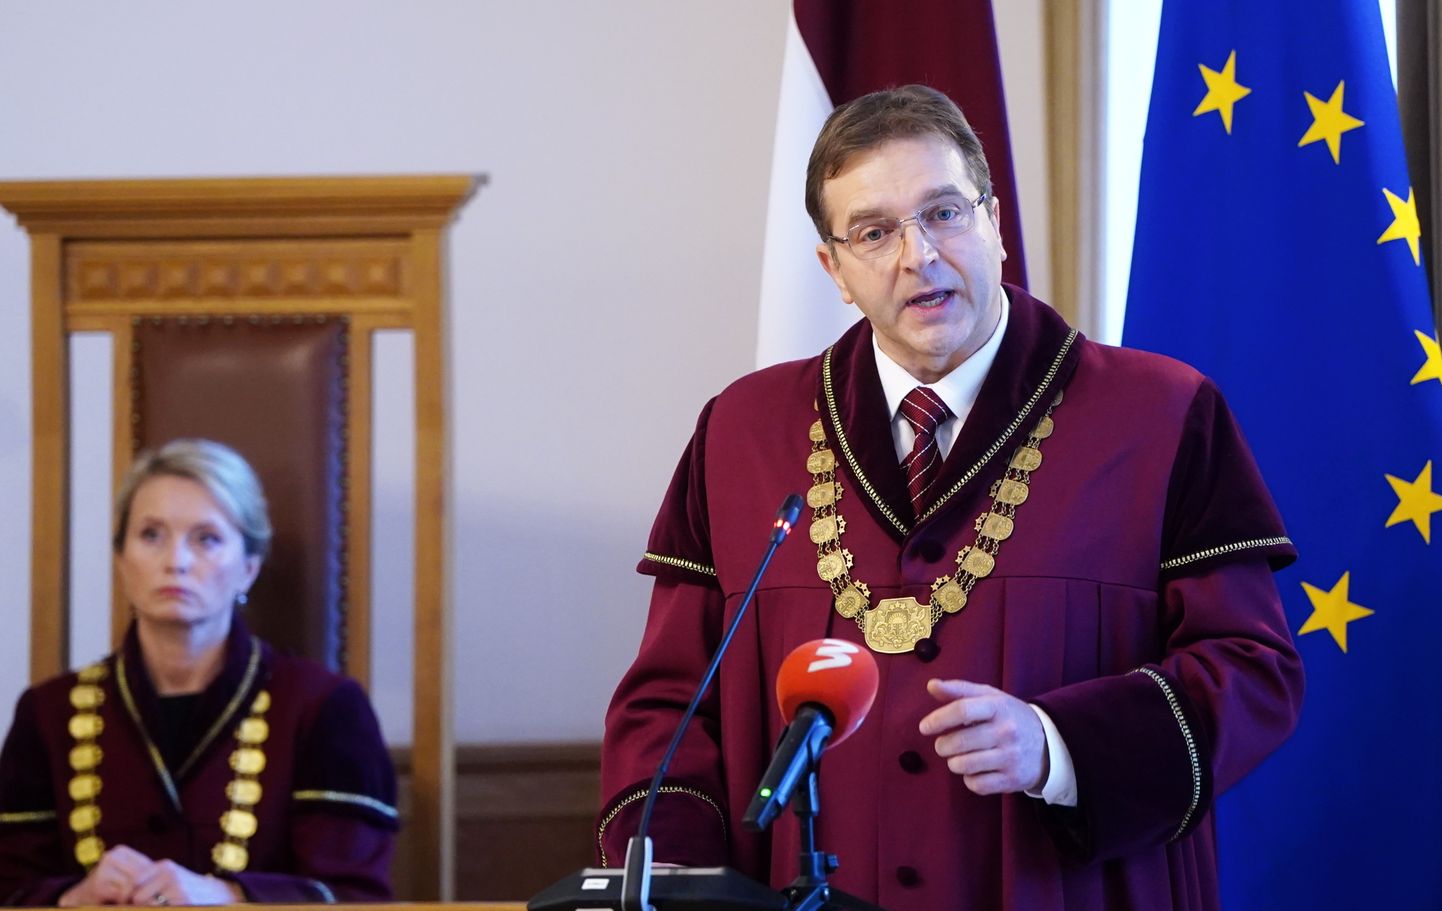 Председатель Конституционного суда Латвии Алвис Лавиньш считает, что знание латышского языка россиянами, которые живут в стране, "это проявление элементарного уважения".